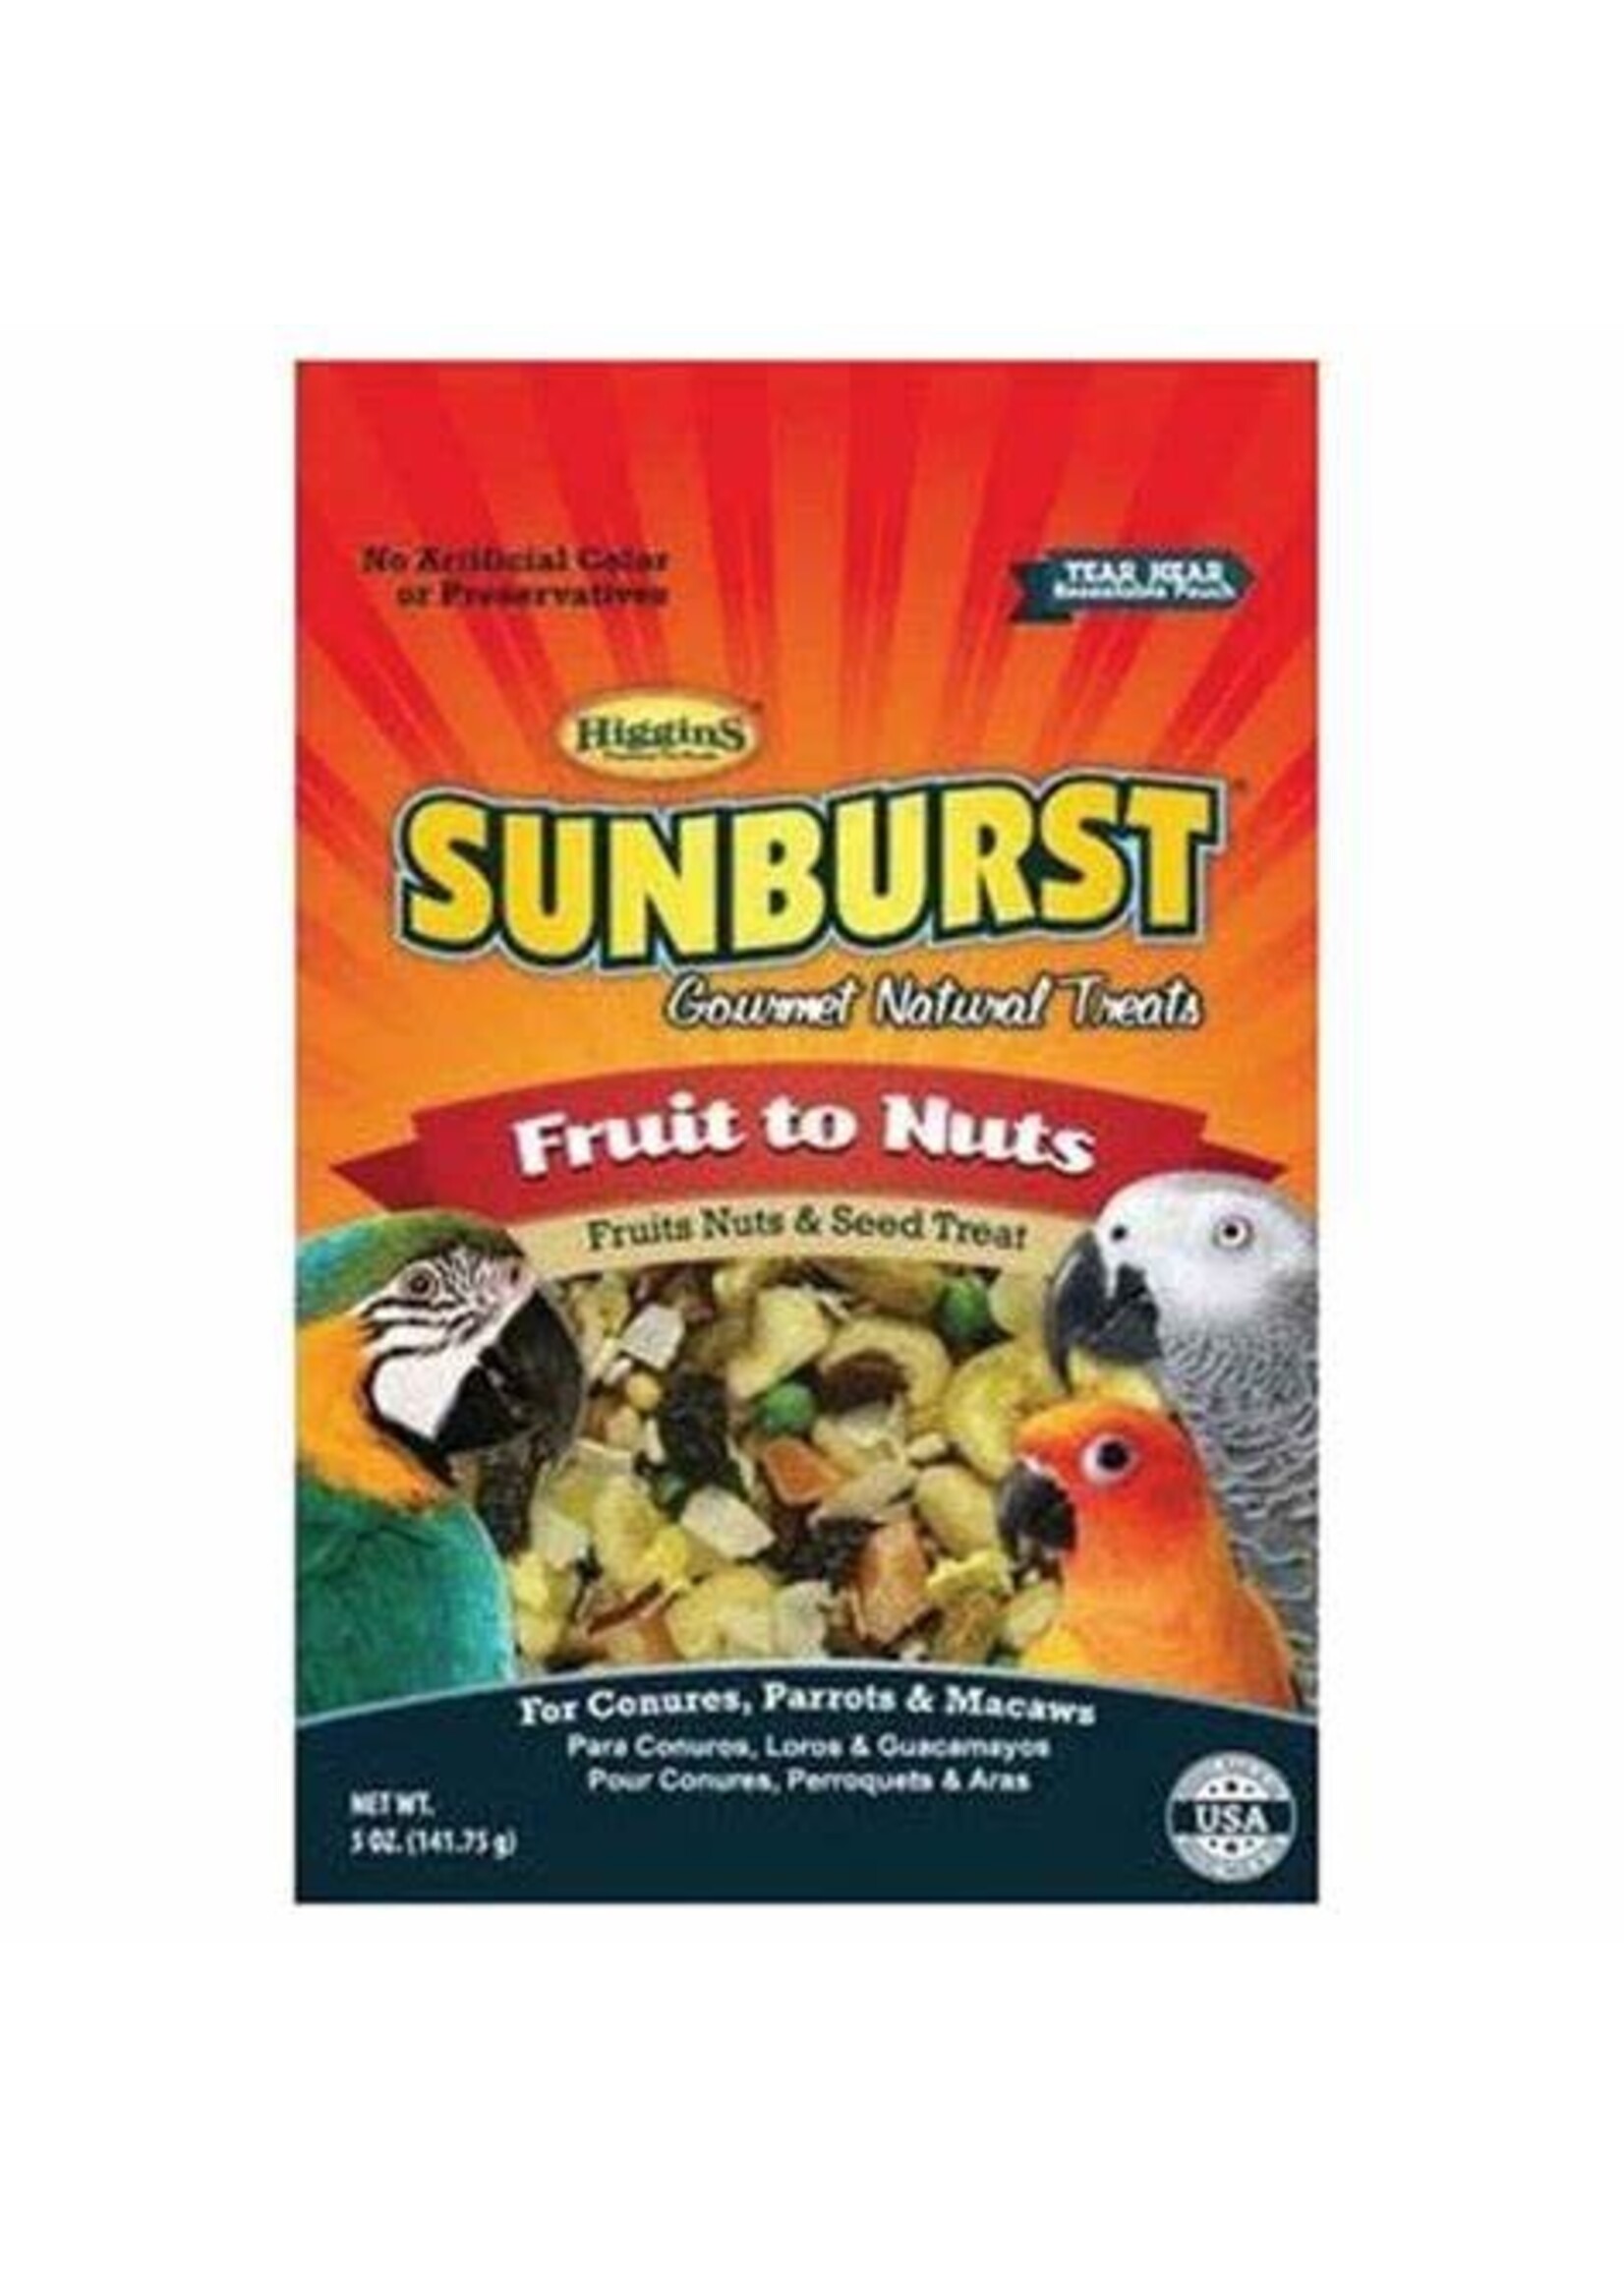 HIGGINS PREMIUM Sunburst Fruit to Nuts 5oz   for Conures, Parrots & Macaws